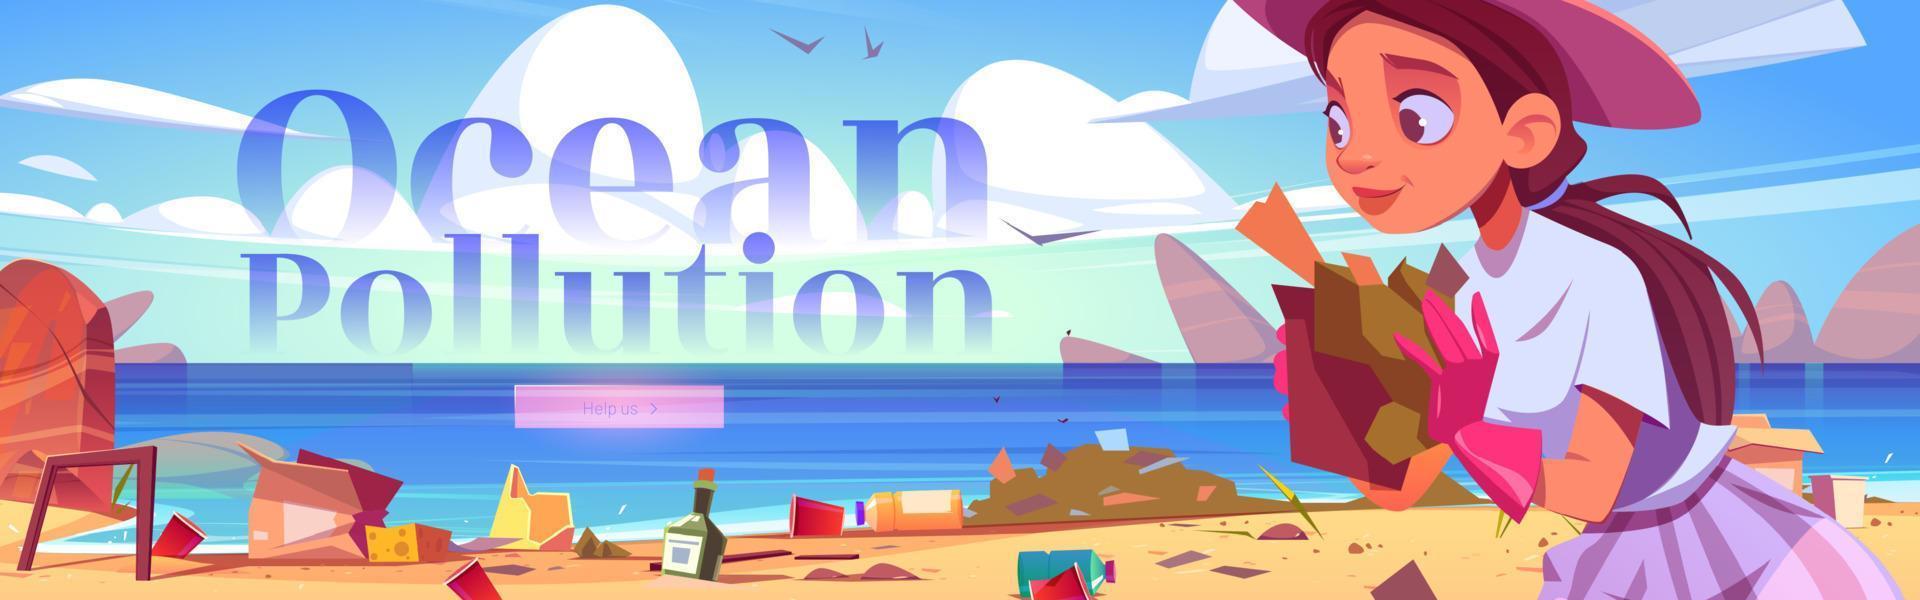 banner web de dibujos animados de contaminación del océano, limpiar la playa vector